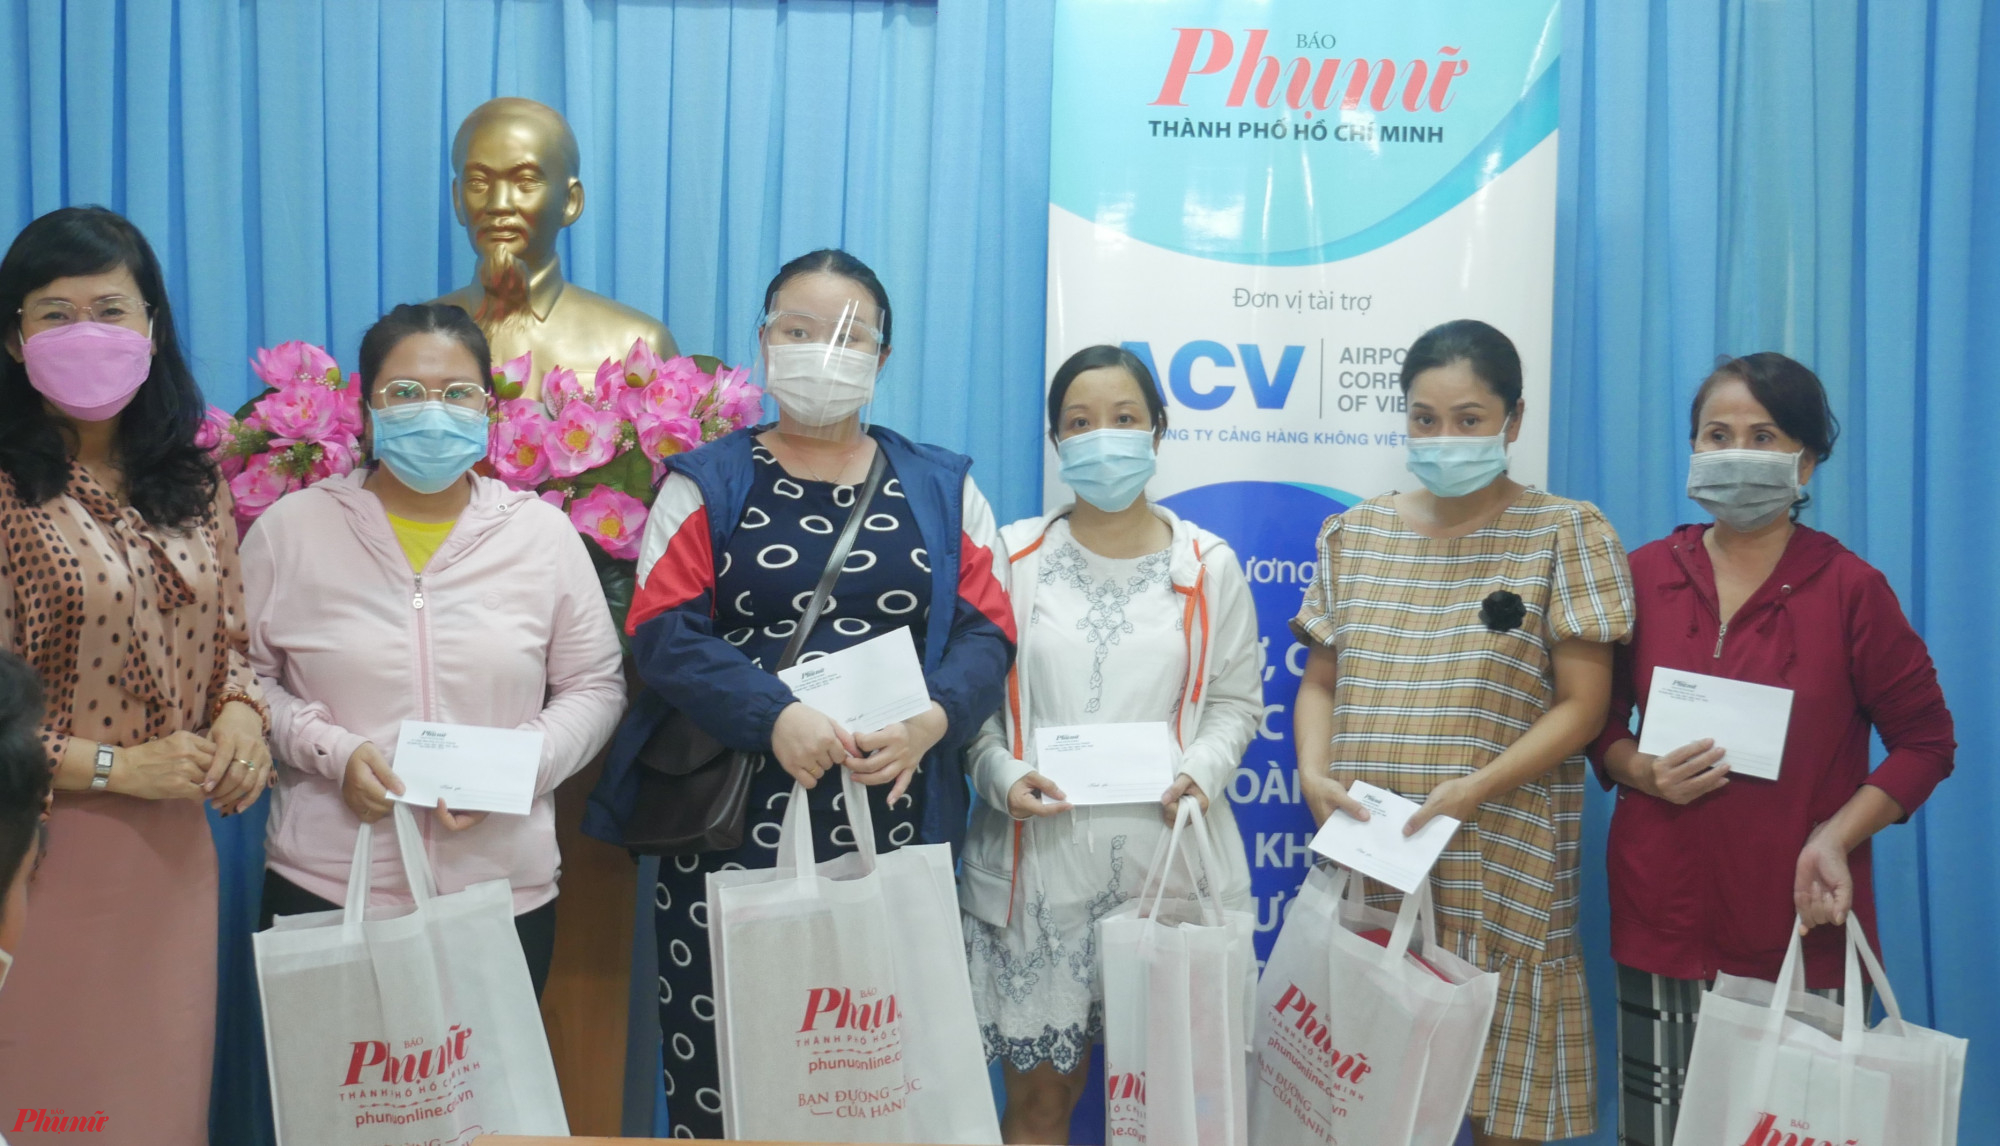 Hội LHPN quận Phú Nhuận gửi tặng những phần quà đến hội viên tại chương trình “Hỗ trợ, chăm lo cho các gia đình có hoàn cảnh khó khăn bị ảnh hưởng bởi dịch COVID-19” của Báo Phụ nữ